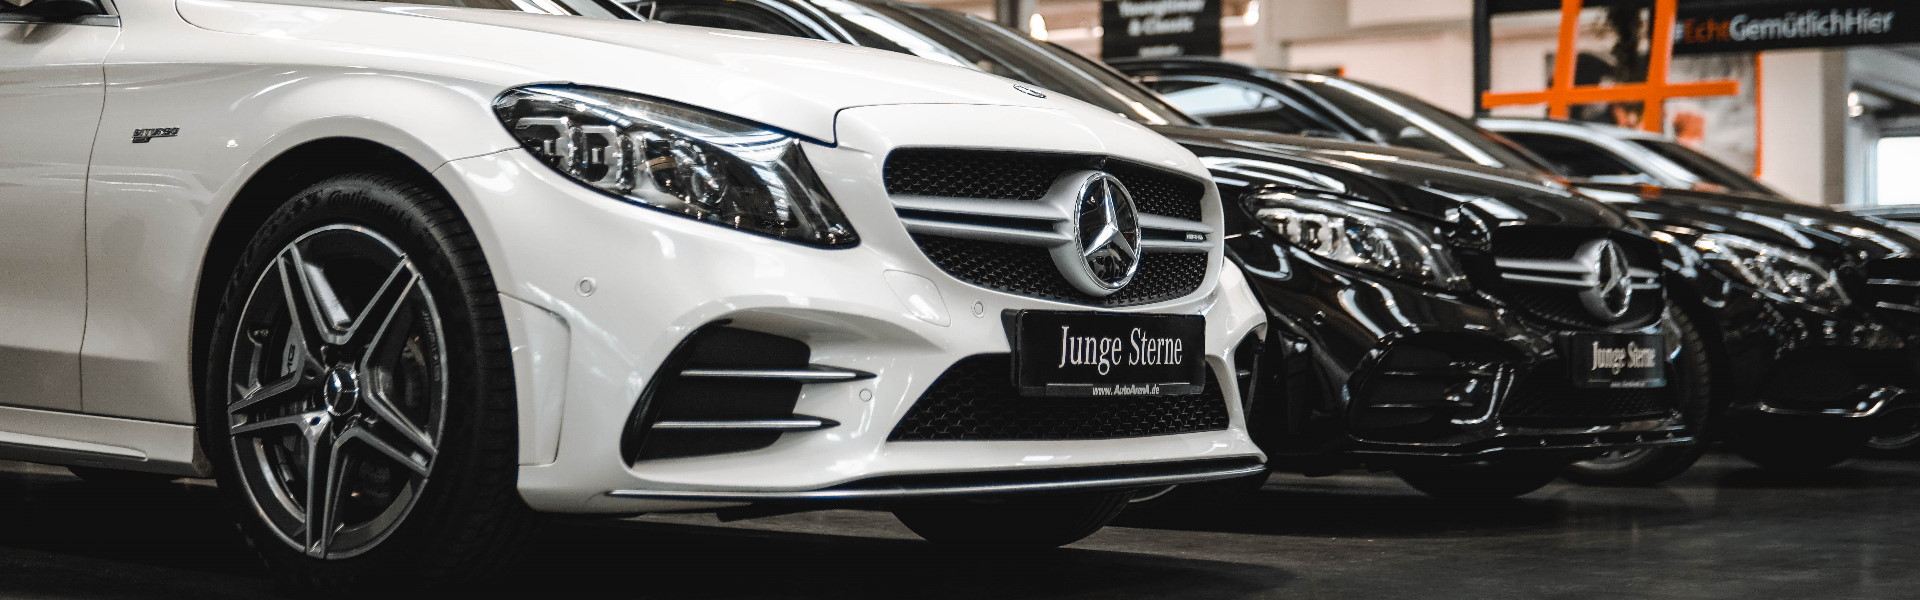 Junge Sterne Mercedes-Benz Gebrauchtwagen kaufen Neckarsulm 